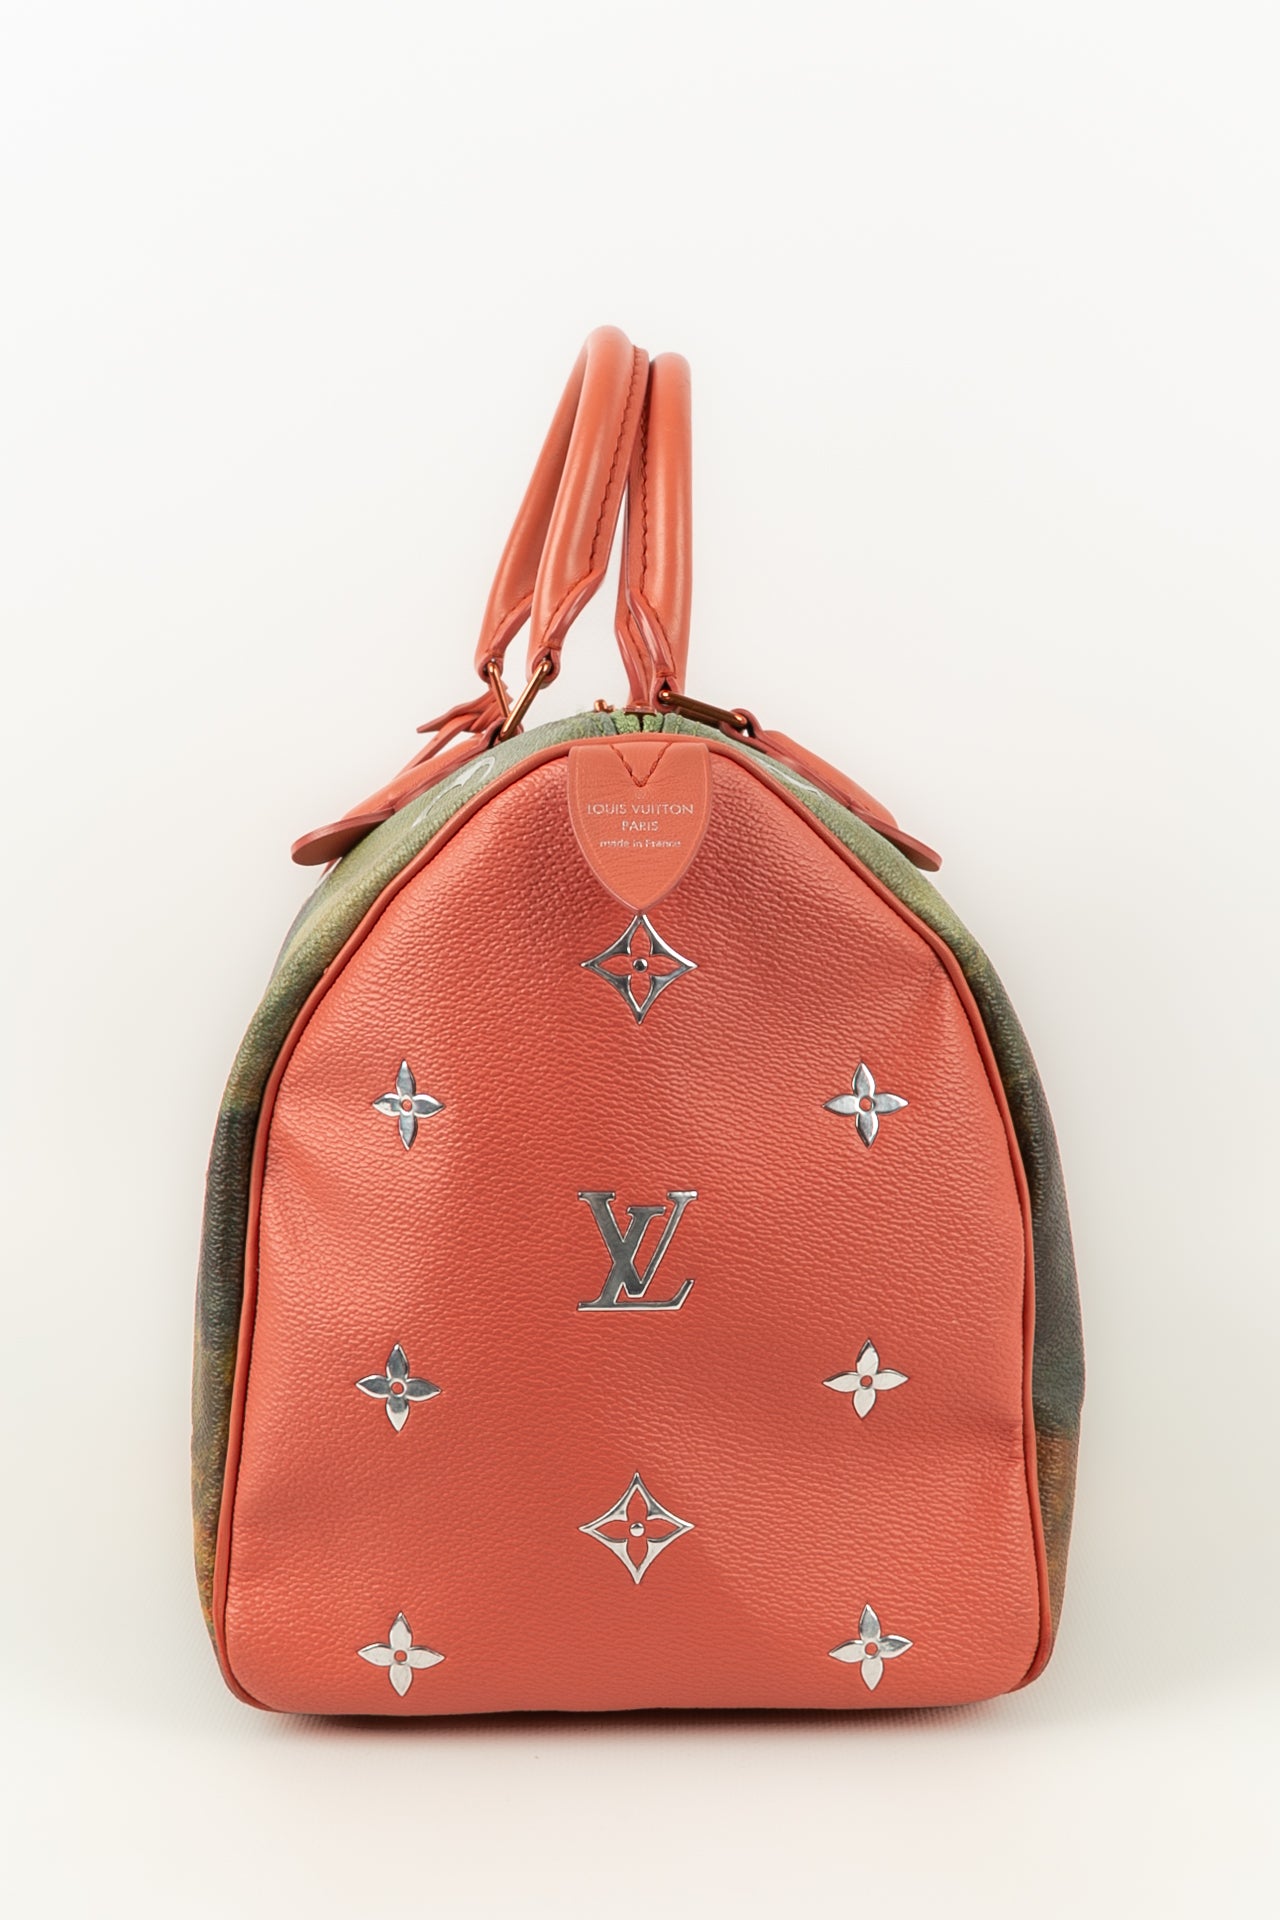 Louis Vuitton X Jeff Koons Da Vinci bag – Les Merveilles De Babellou